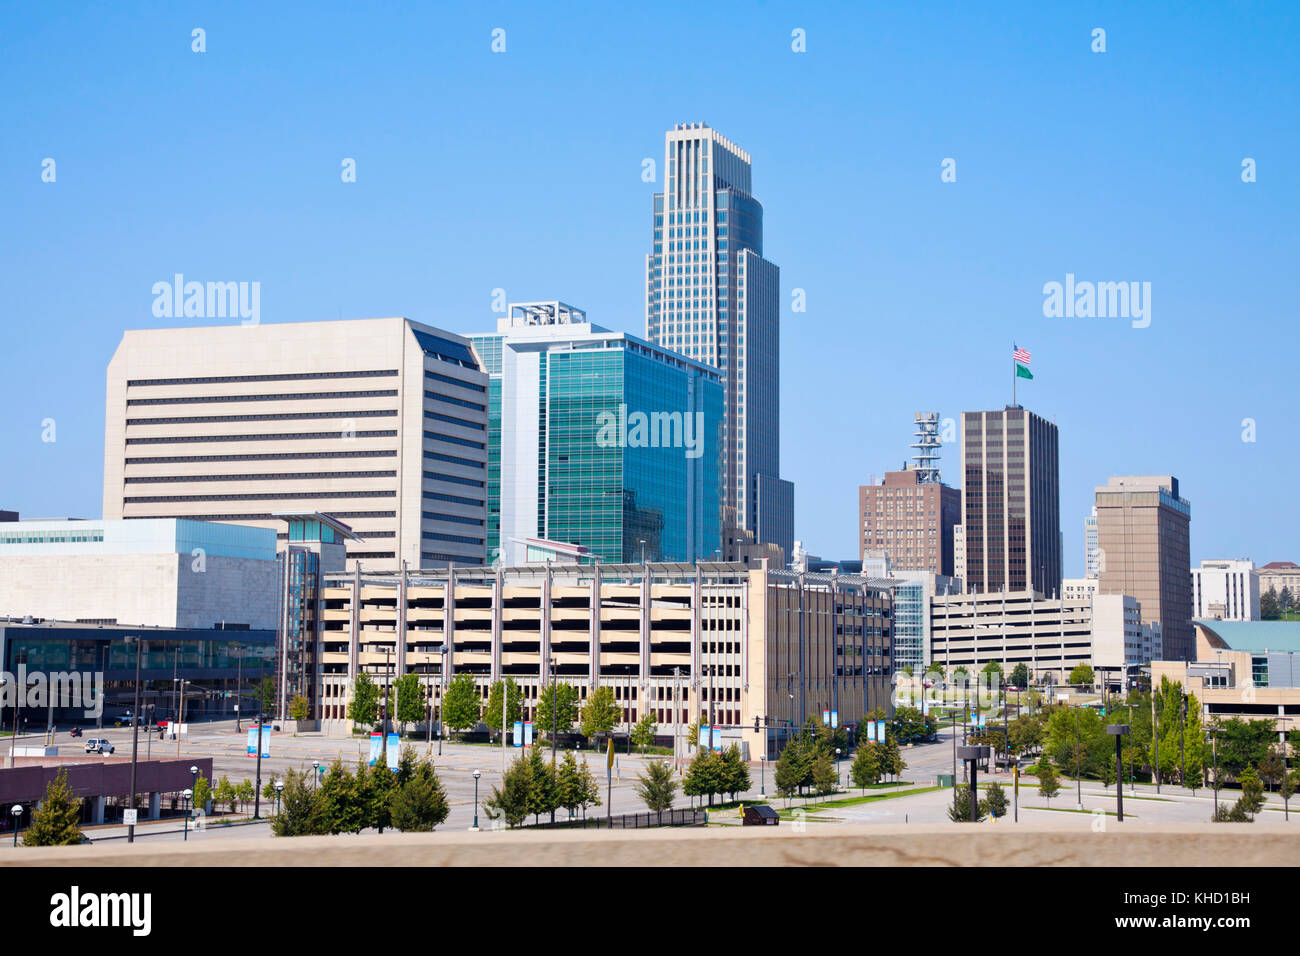 Morgen in Omaha - Skyline der Stadt. Omaha, Nebraska, USA. Stockfoto